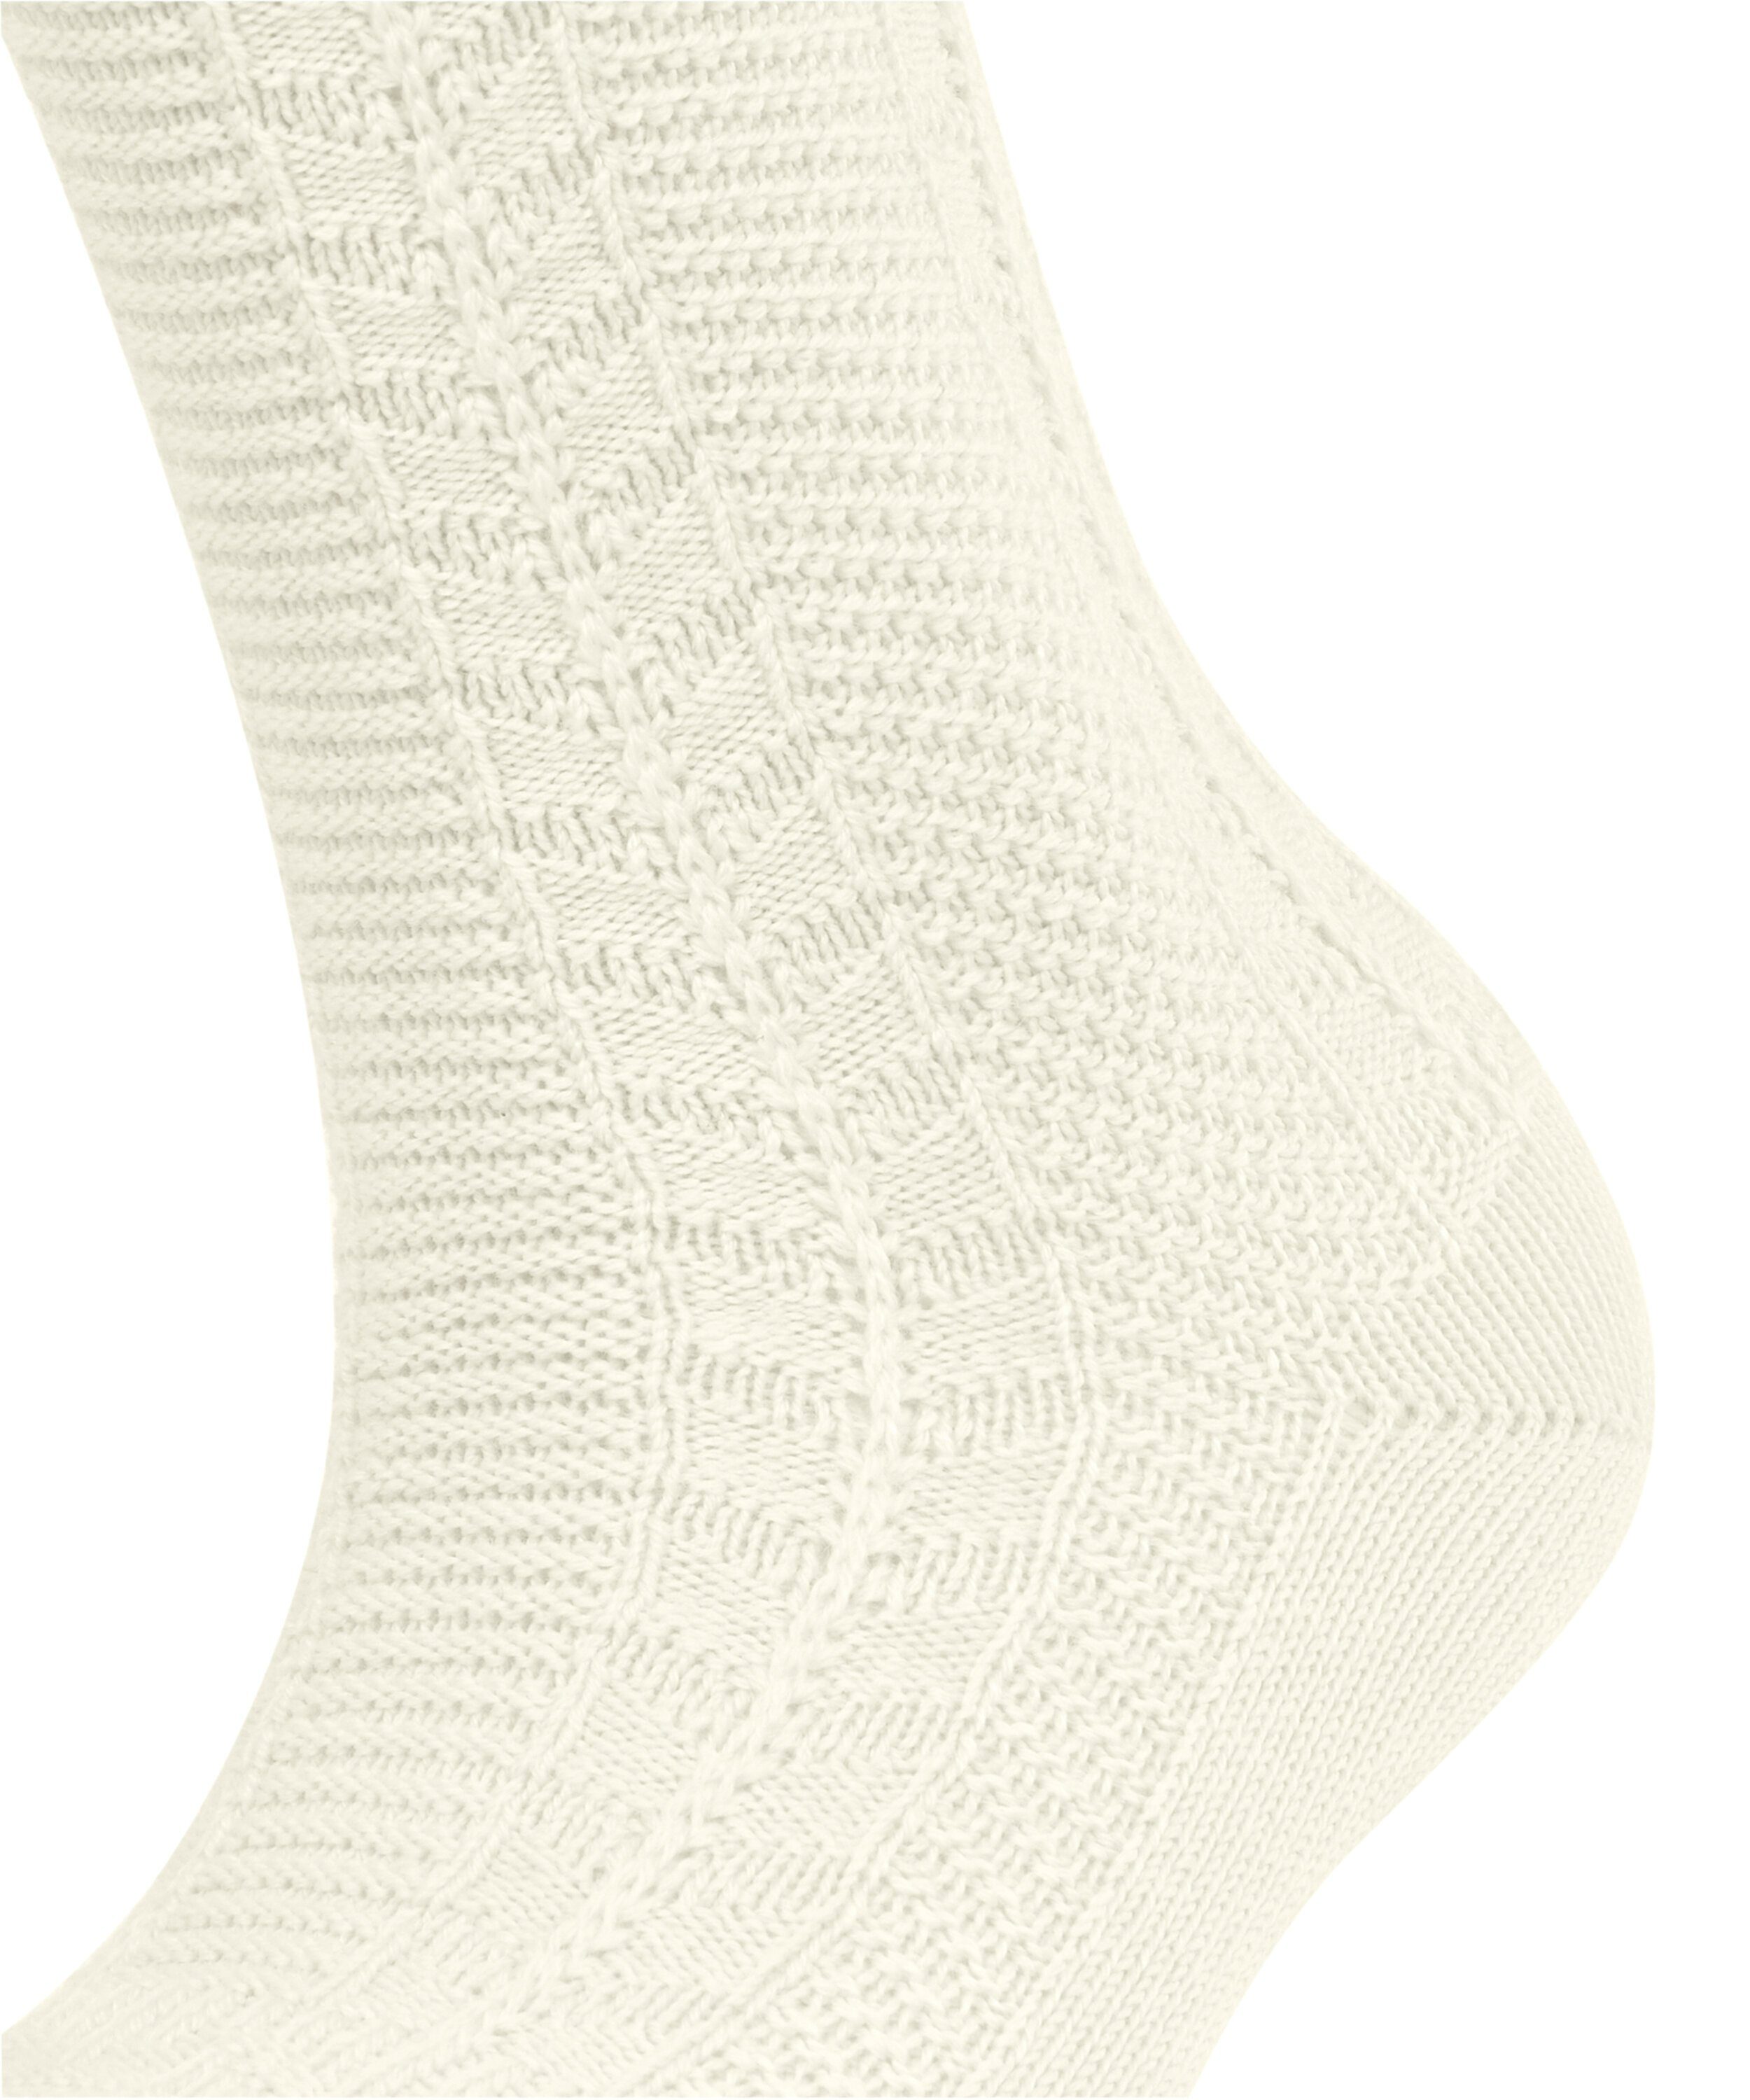 FALKE woolwhite Socken (1-Paar) (2060) Melody